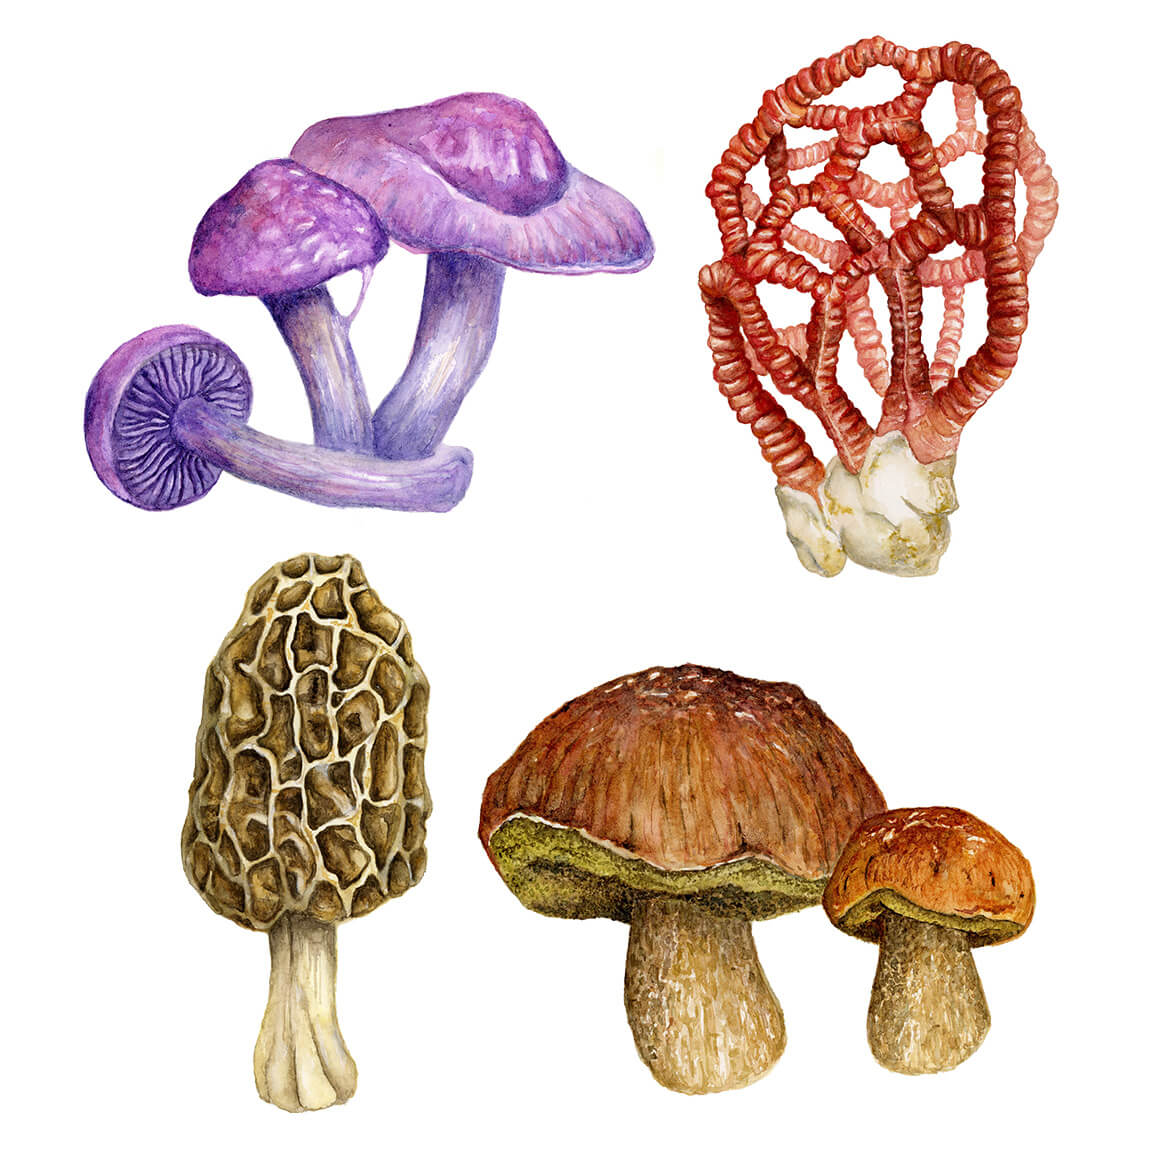 Vier Pilze mit stark unterschiedlichen Formen und Farben